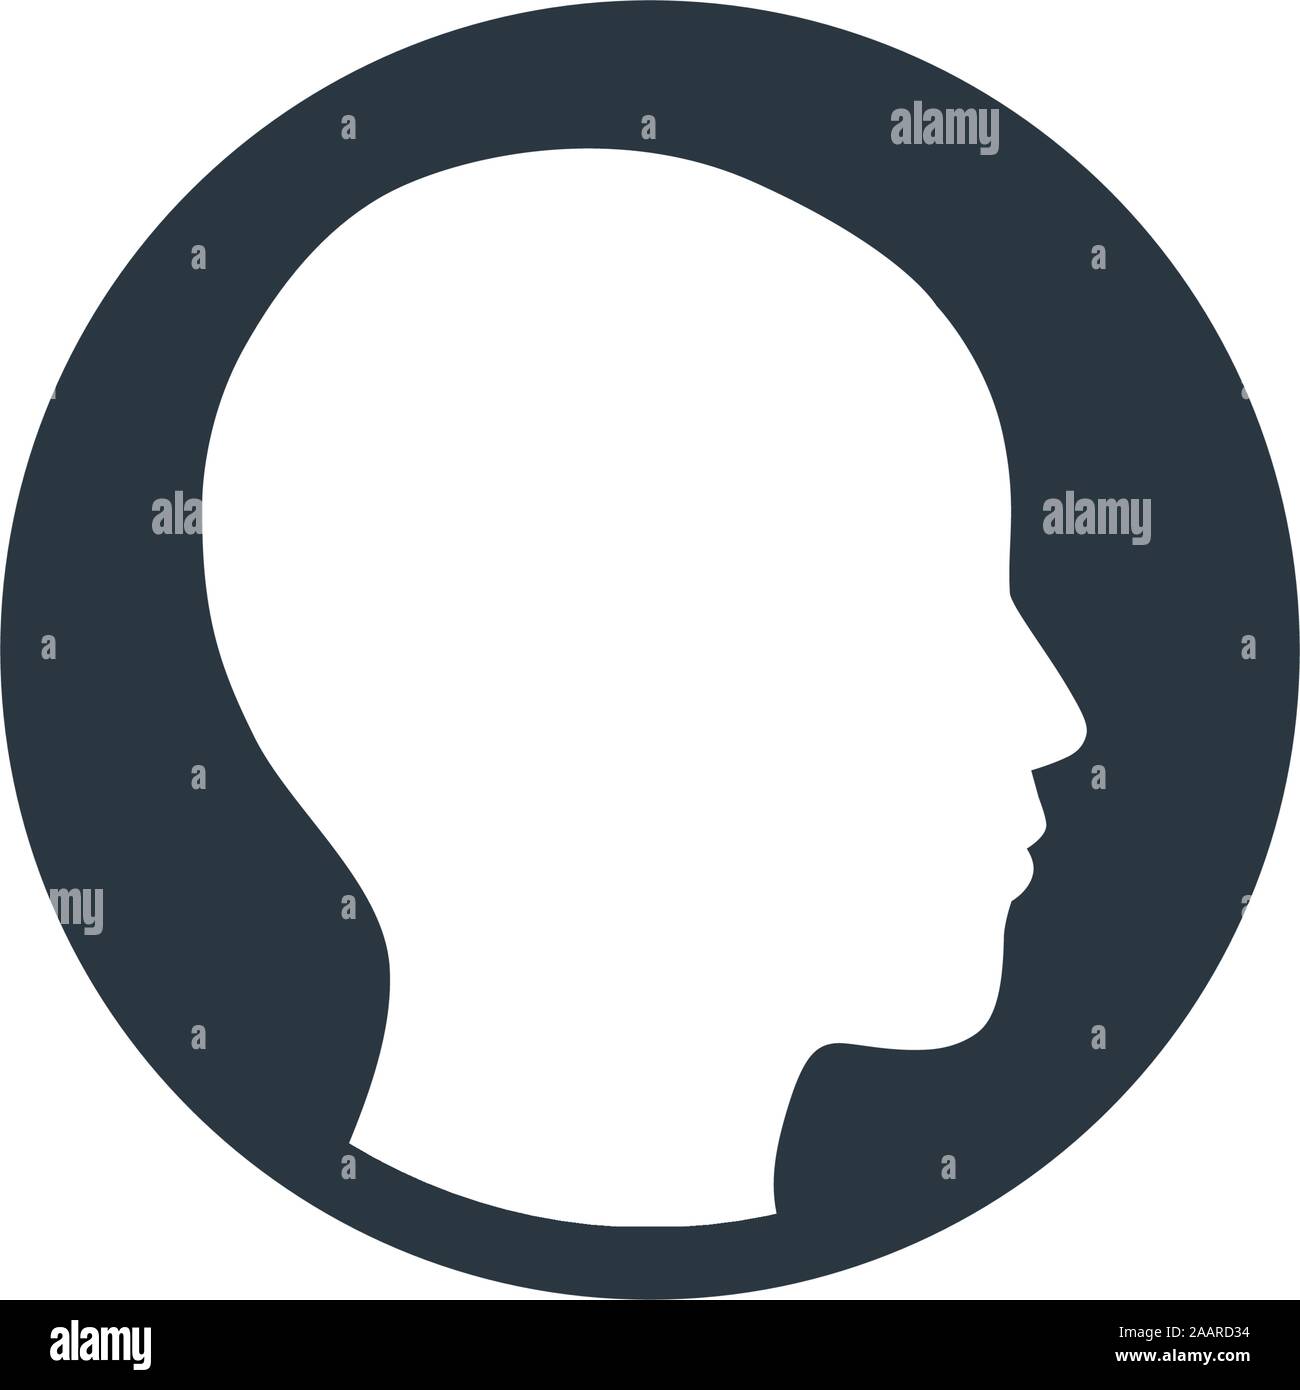 Round profilo utente avatar illustrazioni di testa. Stock illustrazione vettoriale isolati su sfondo bianco. Illustrazione Vettoriale